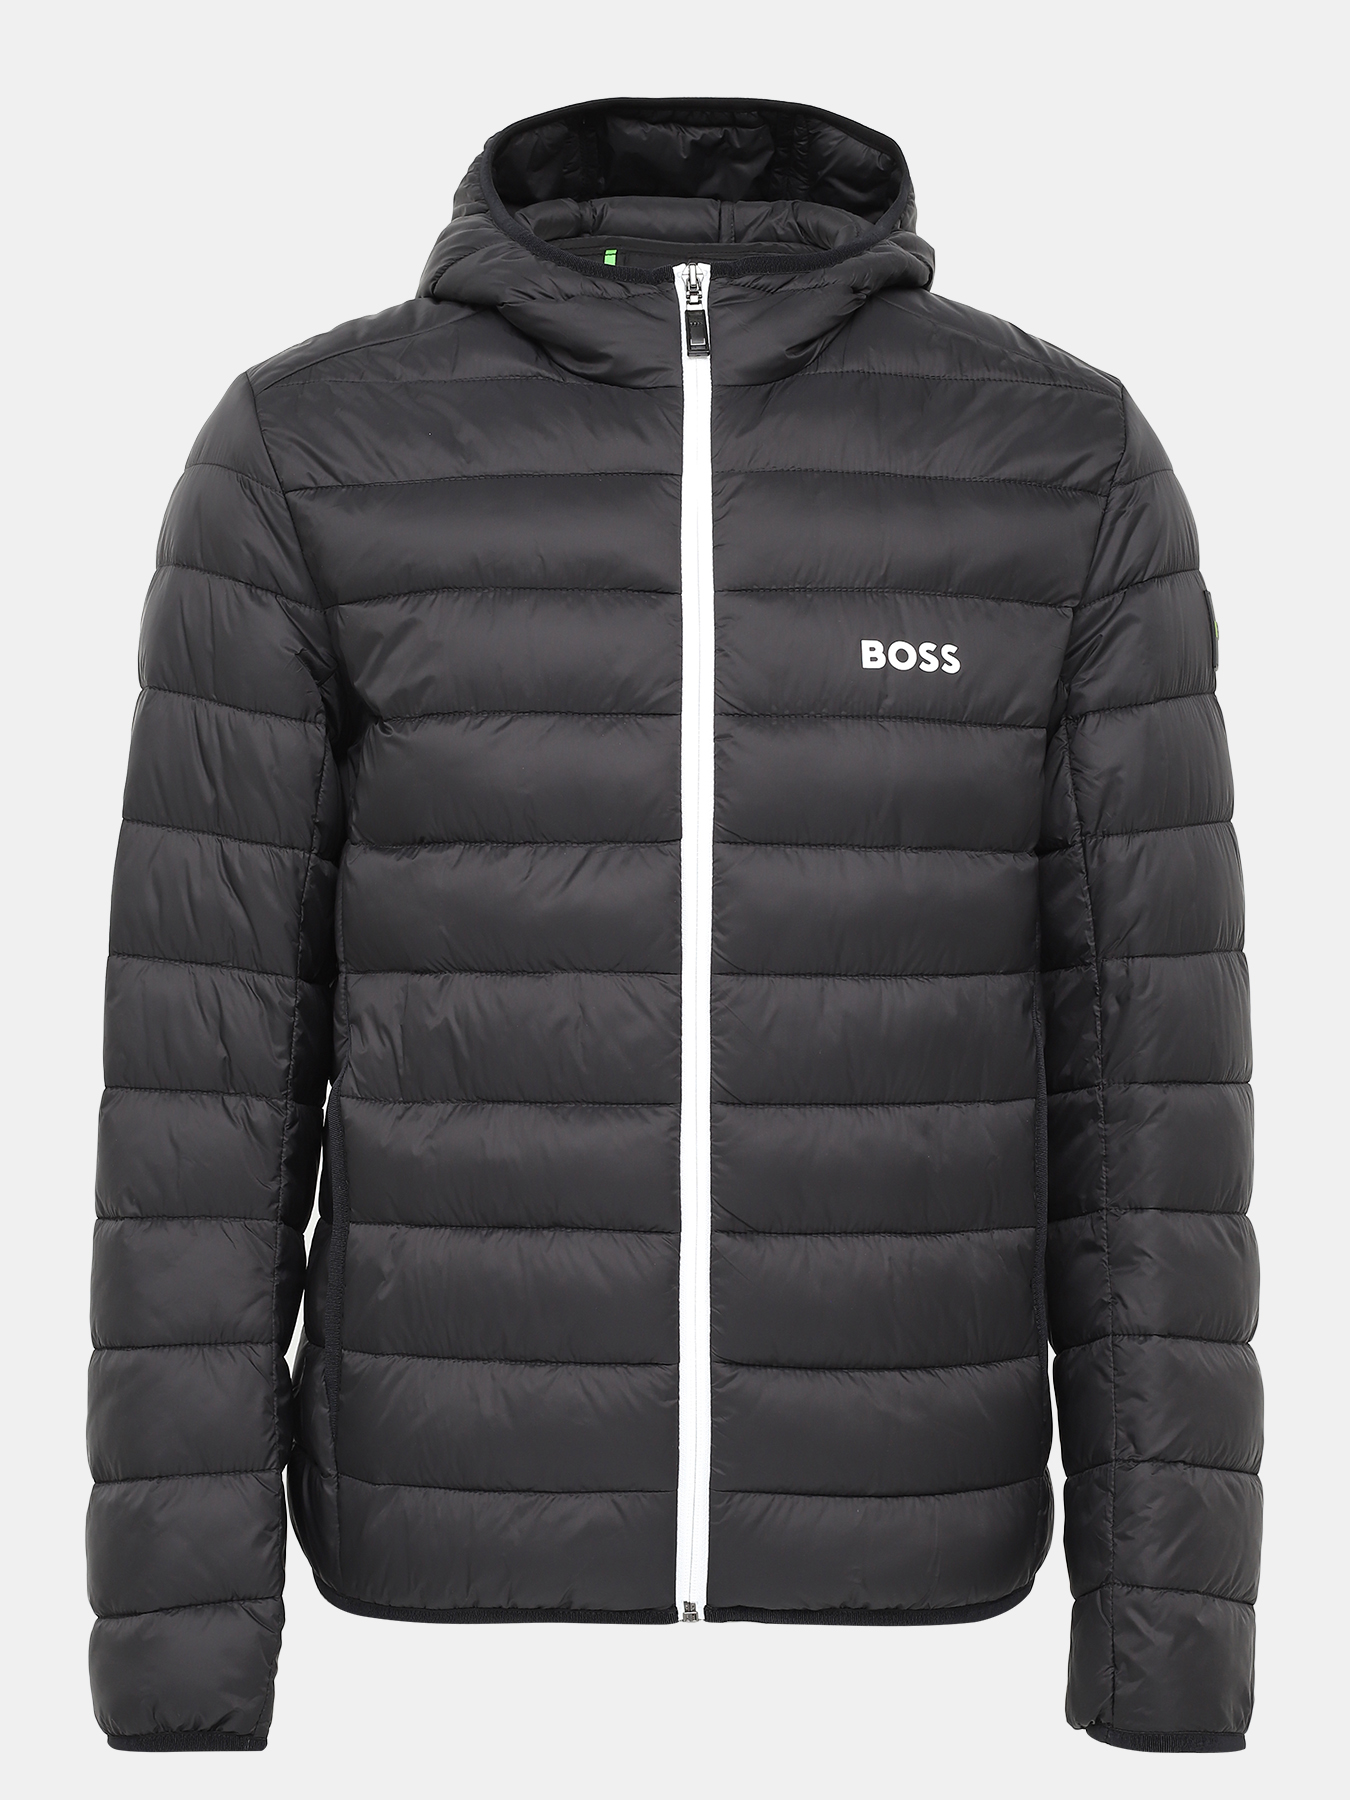 Куртка J Thor BOSS 421131-044, цвет черный, размер 50-52